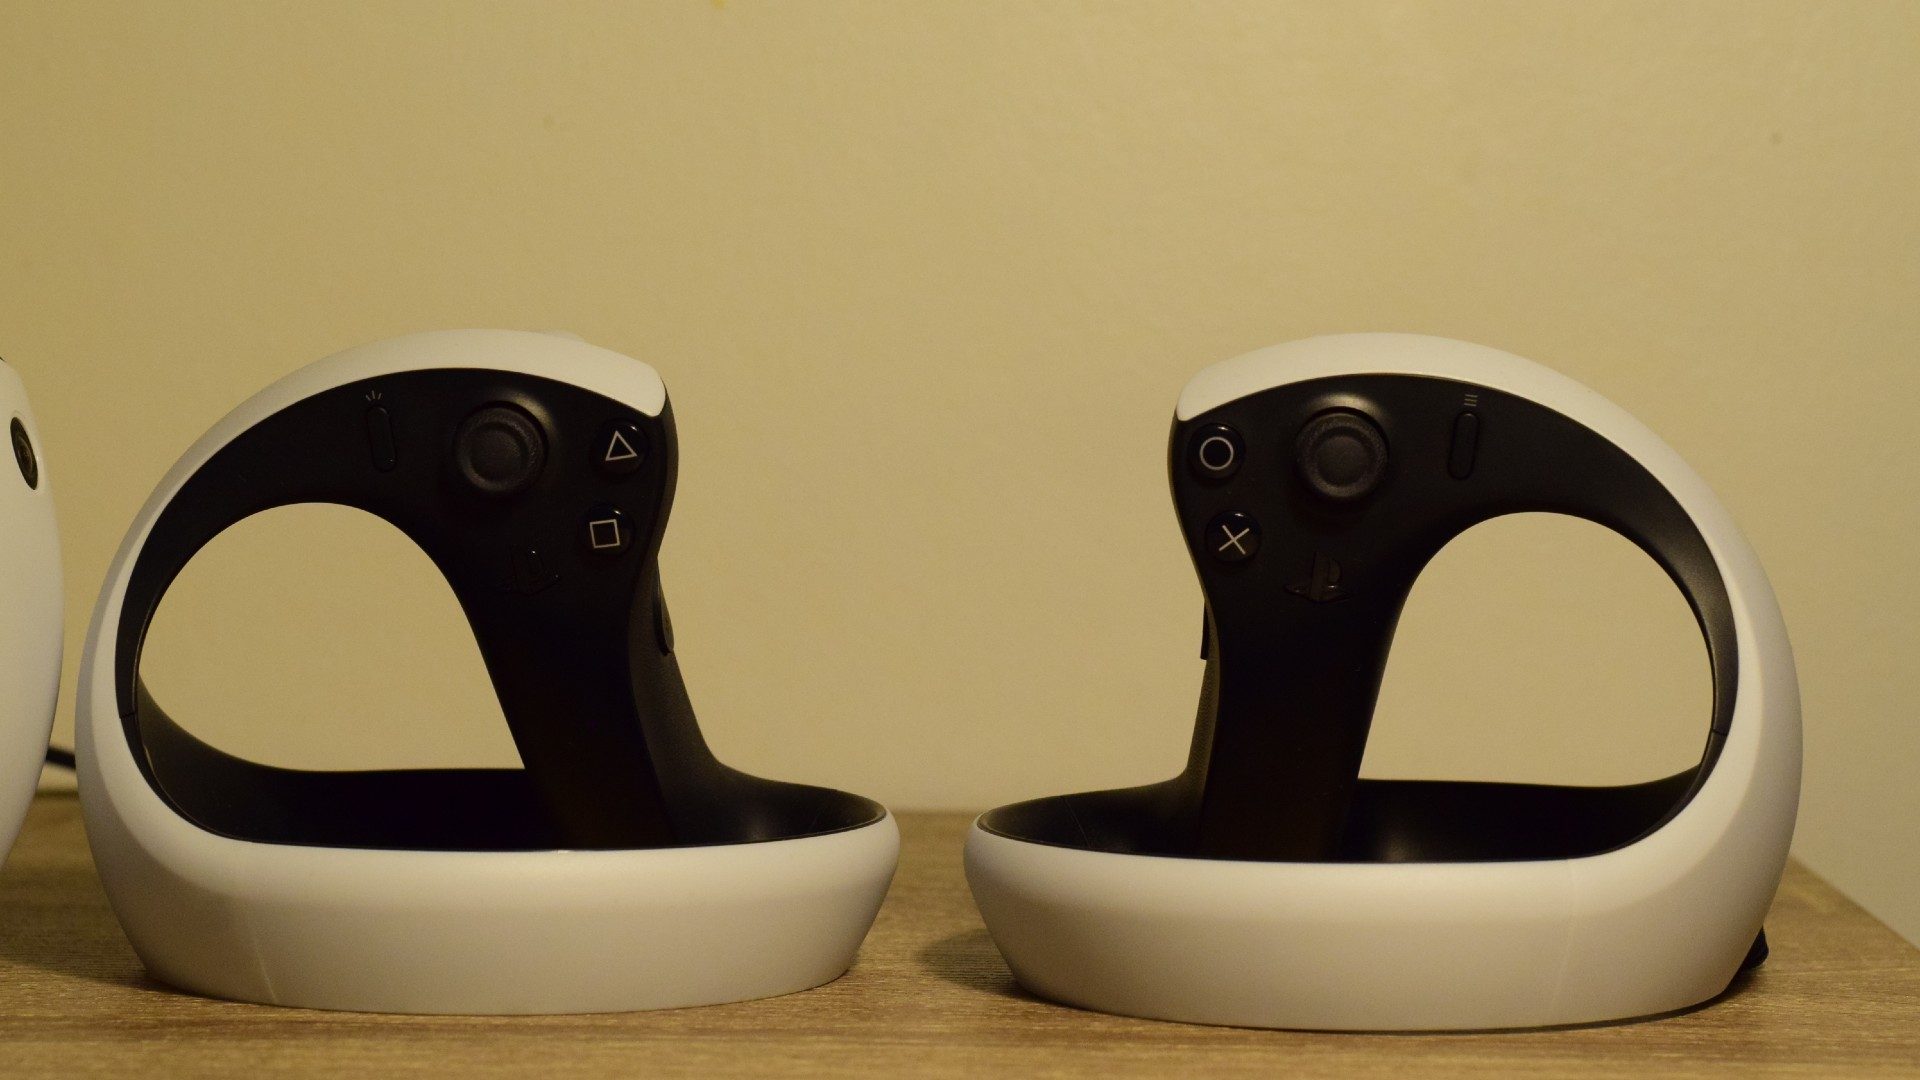 Case Playstation VR 2 – VRGaming